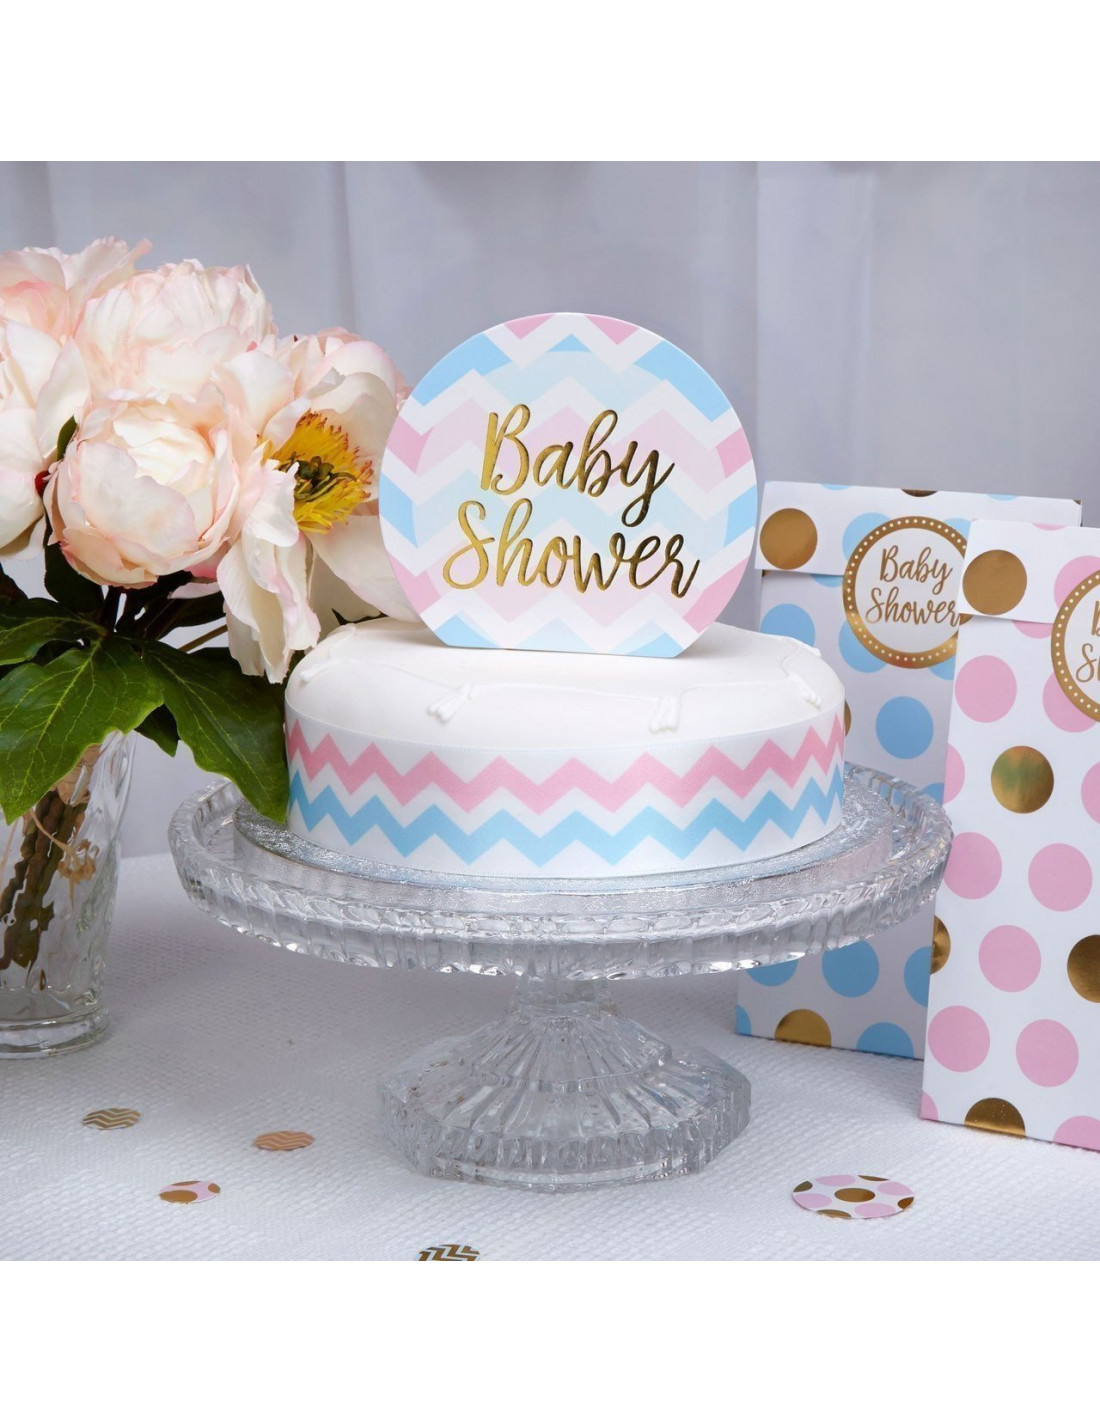 Gâteau shower bébé